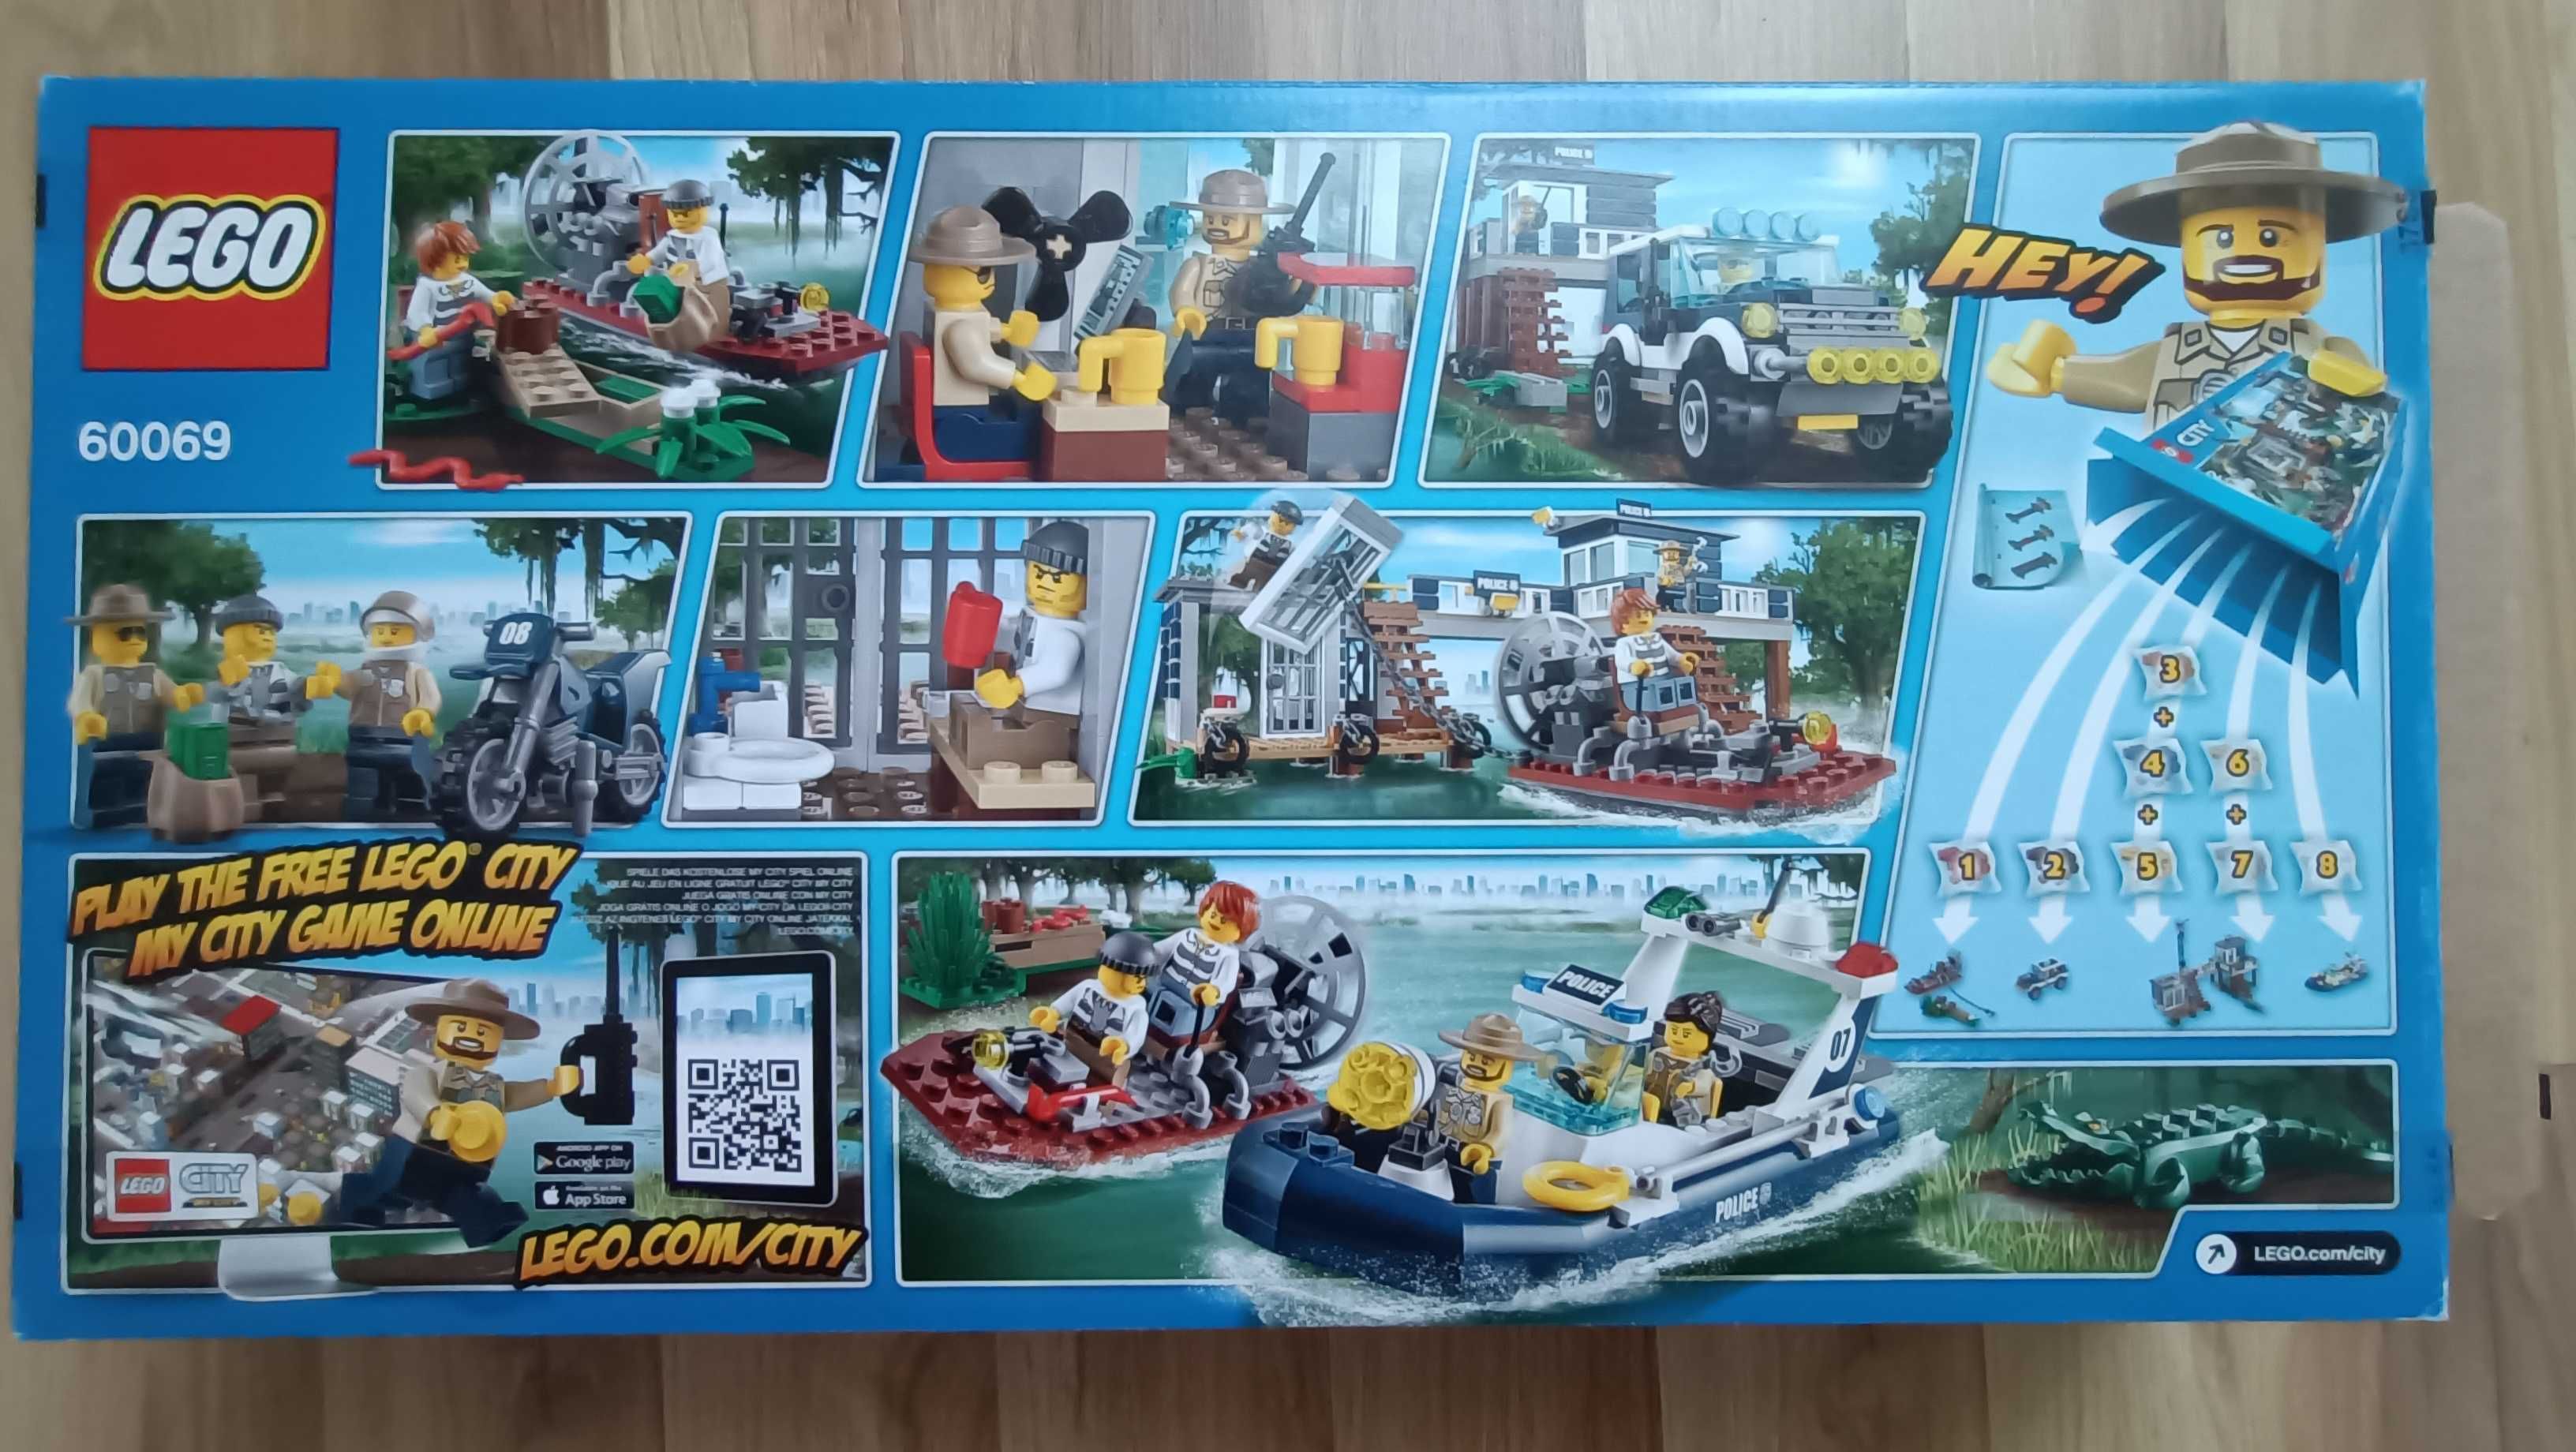 LEGO City 60069 Posterunek wodnej policji kompletny pudełko instrukcje